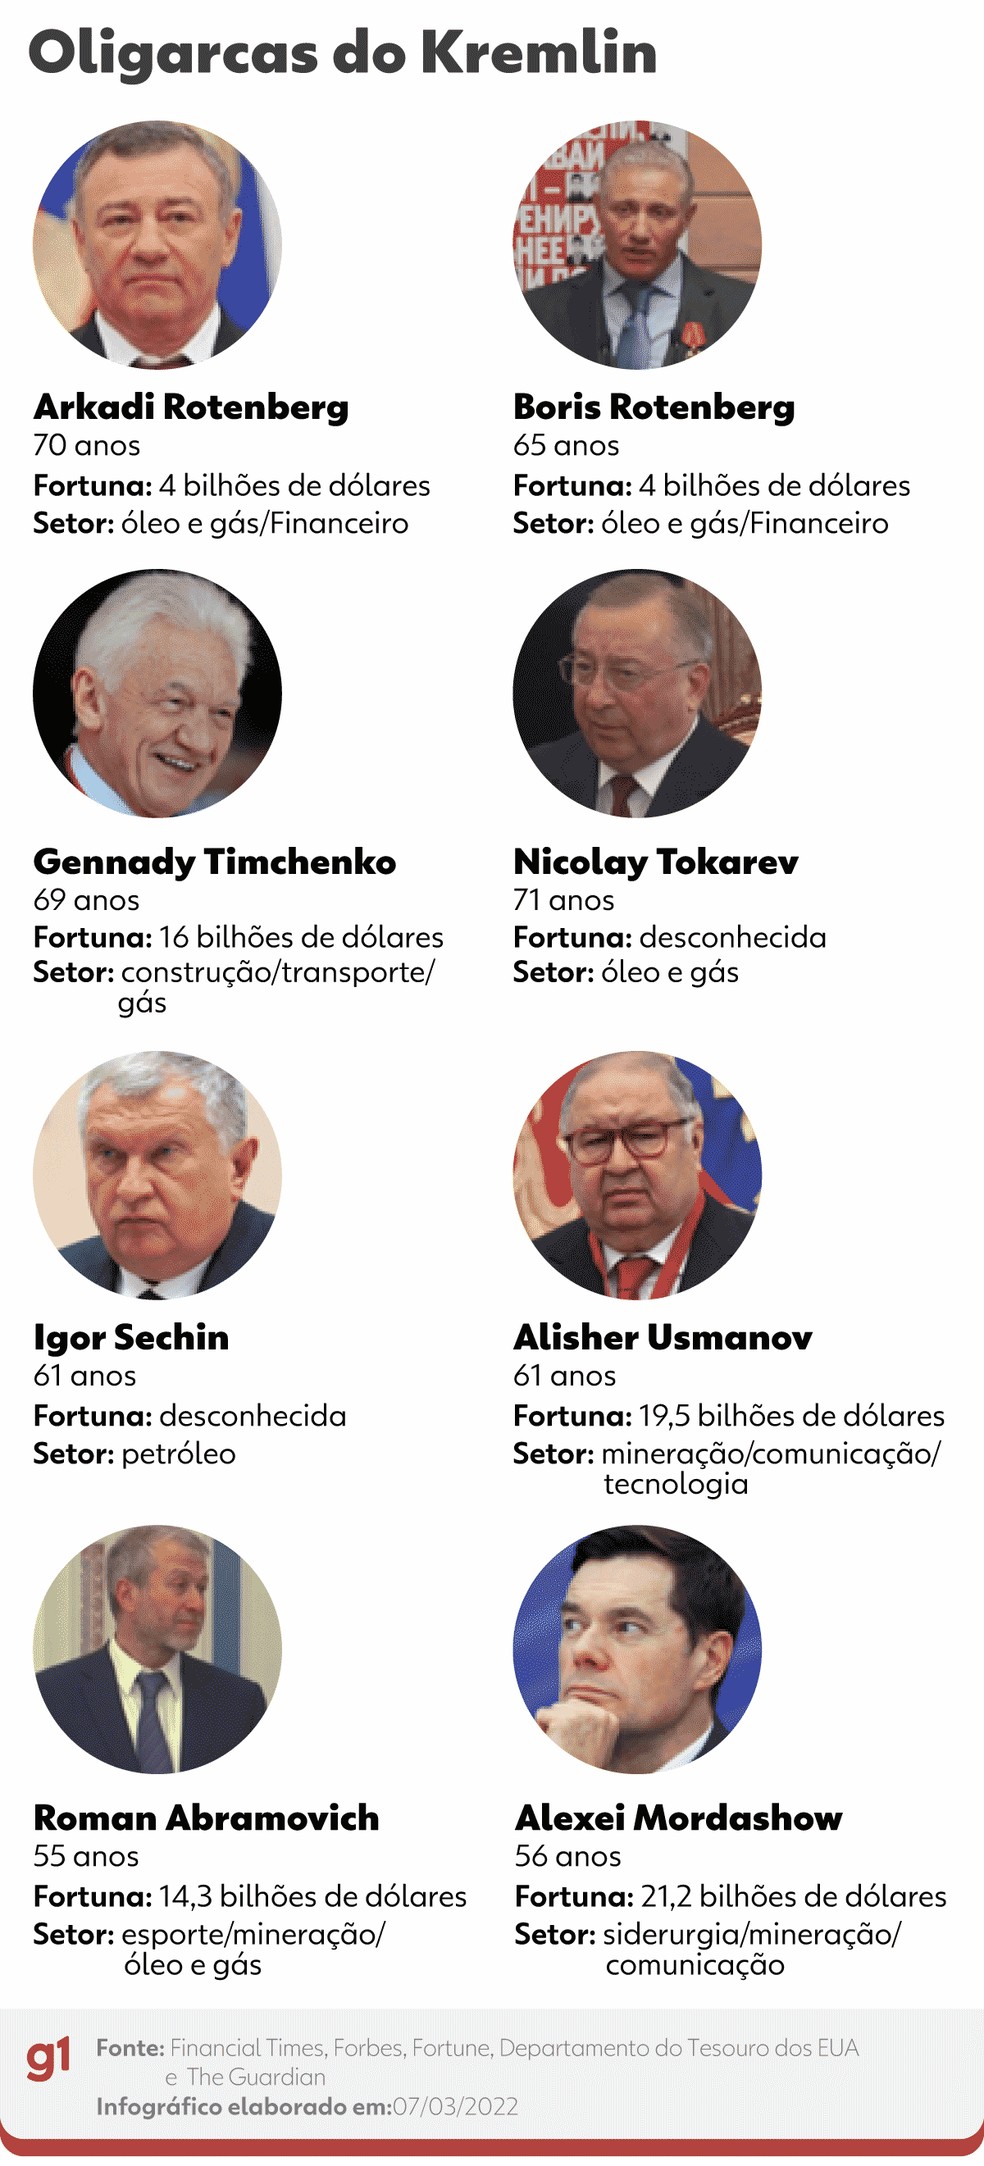 Quem é o pai dos oligarcas que ofereceu emprego a Putin e agora